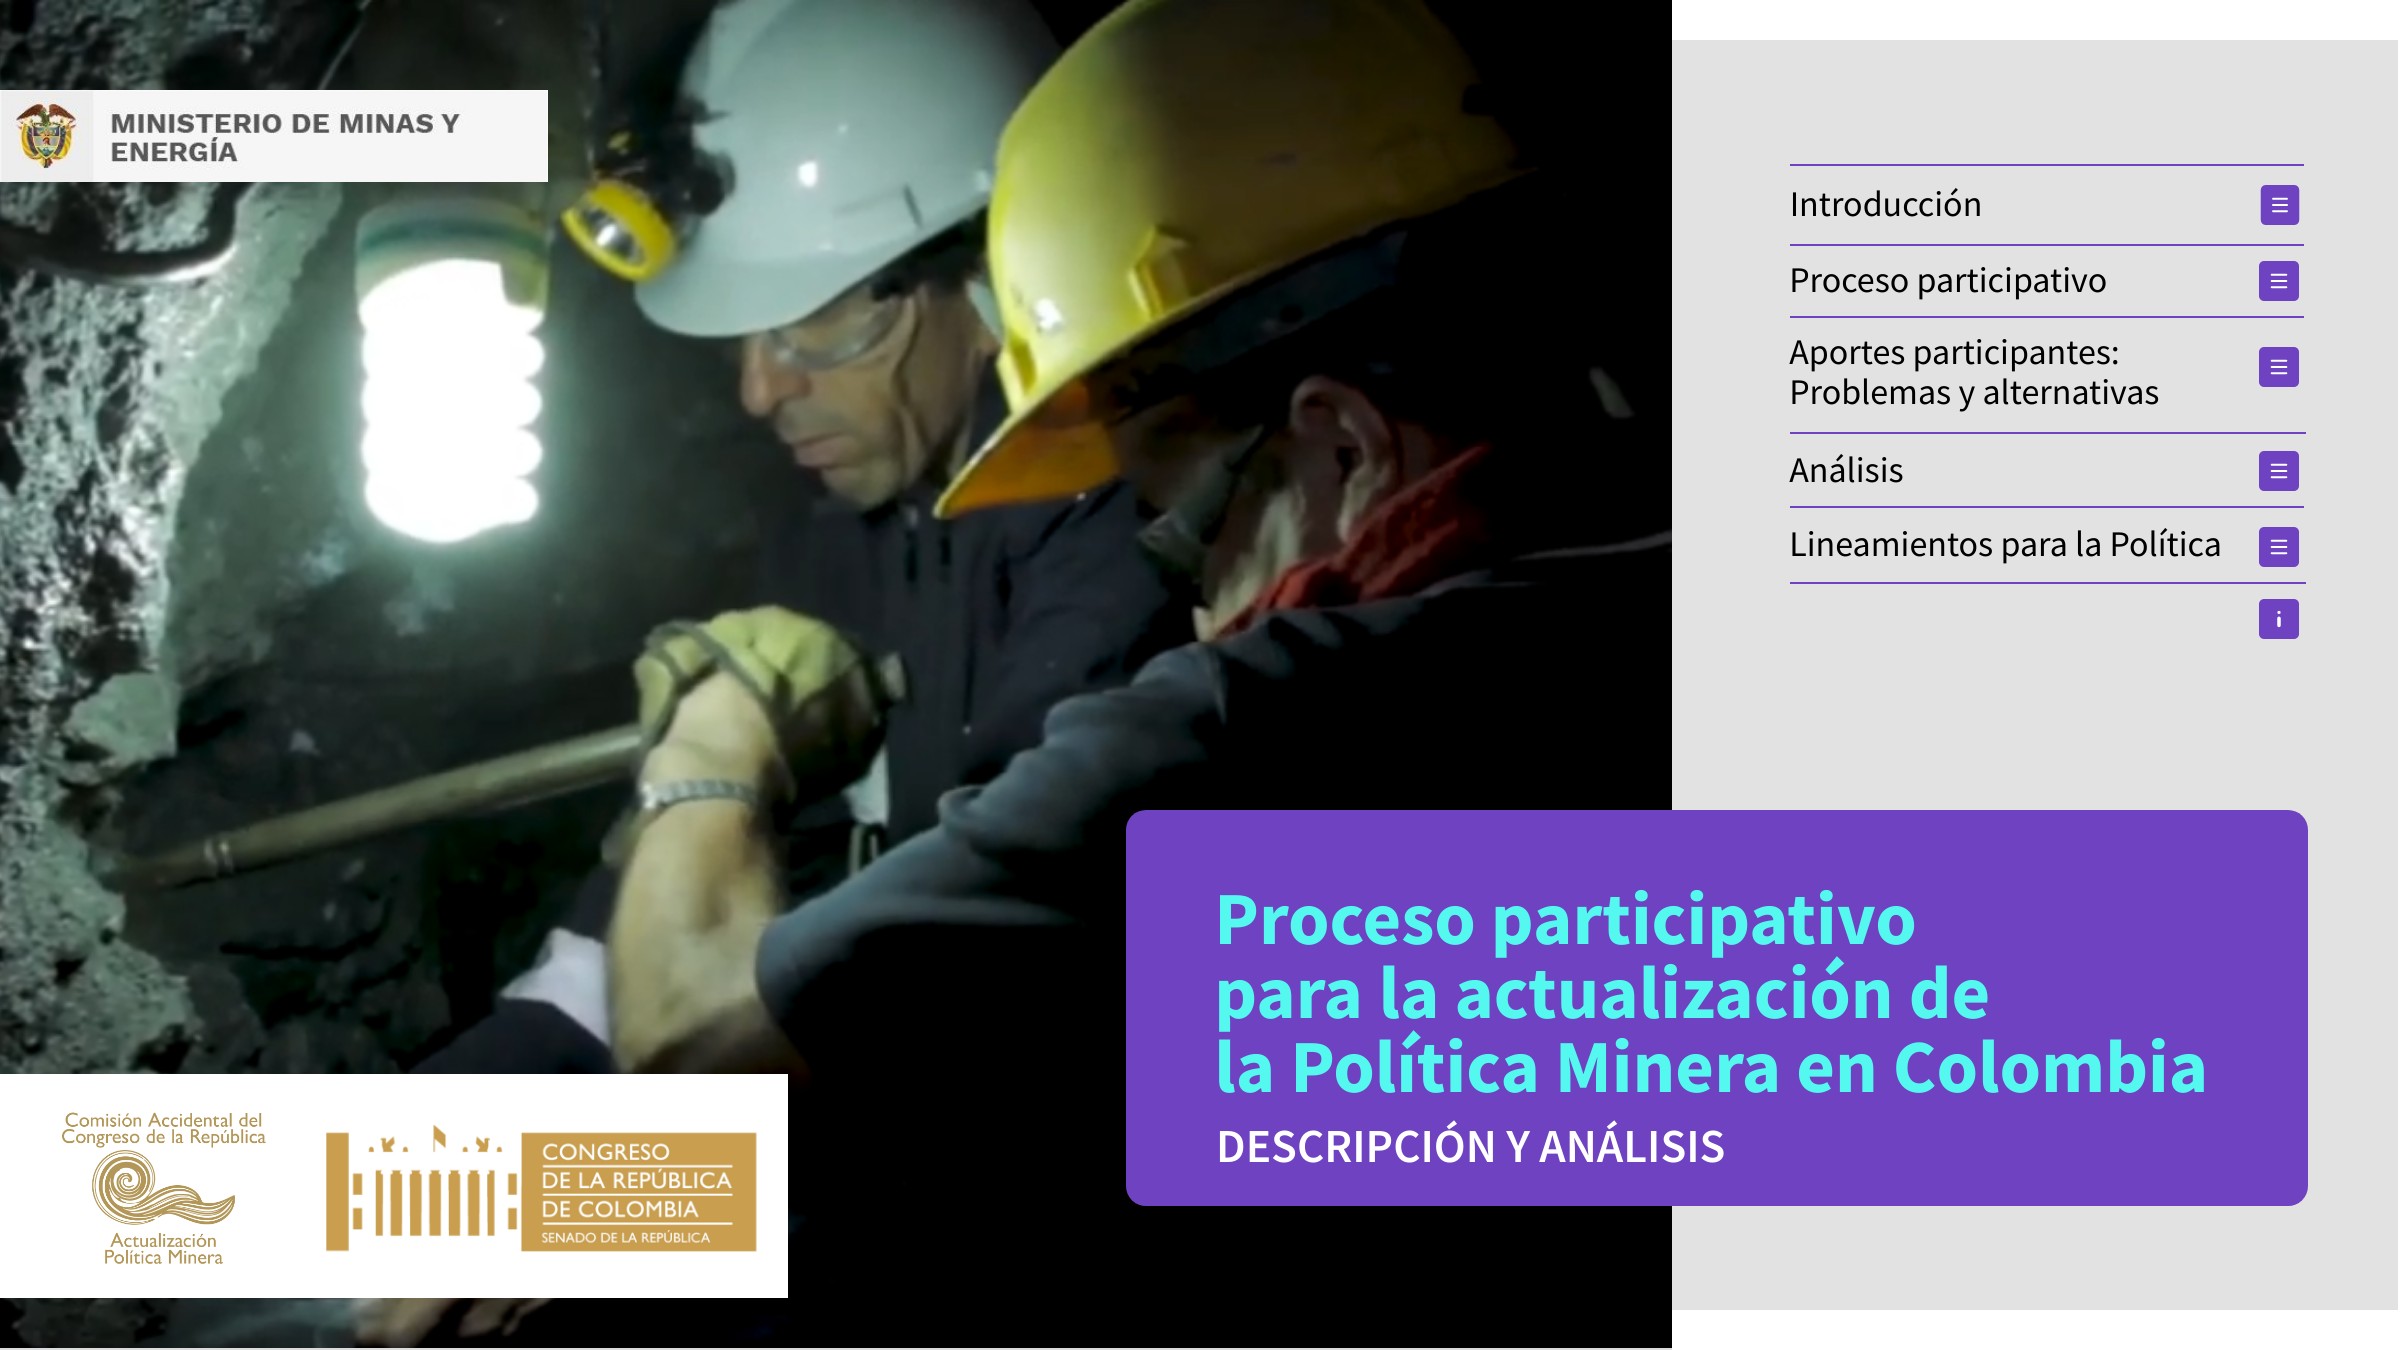 Portada de la presentación del proceso participativo de la política minera